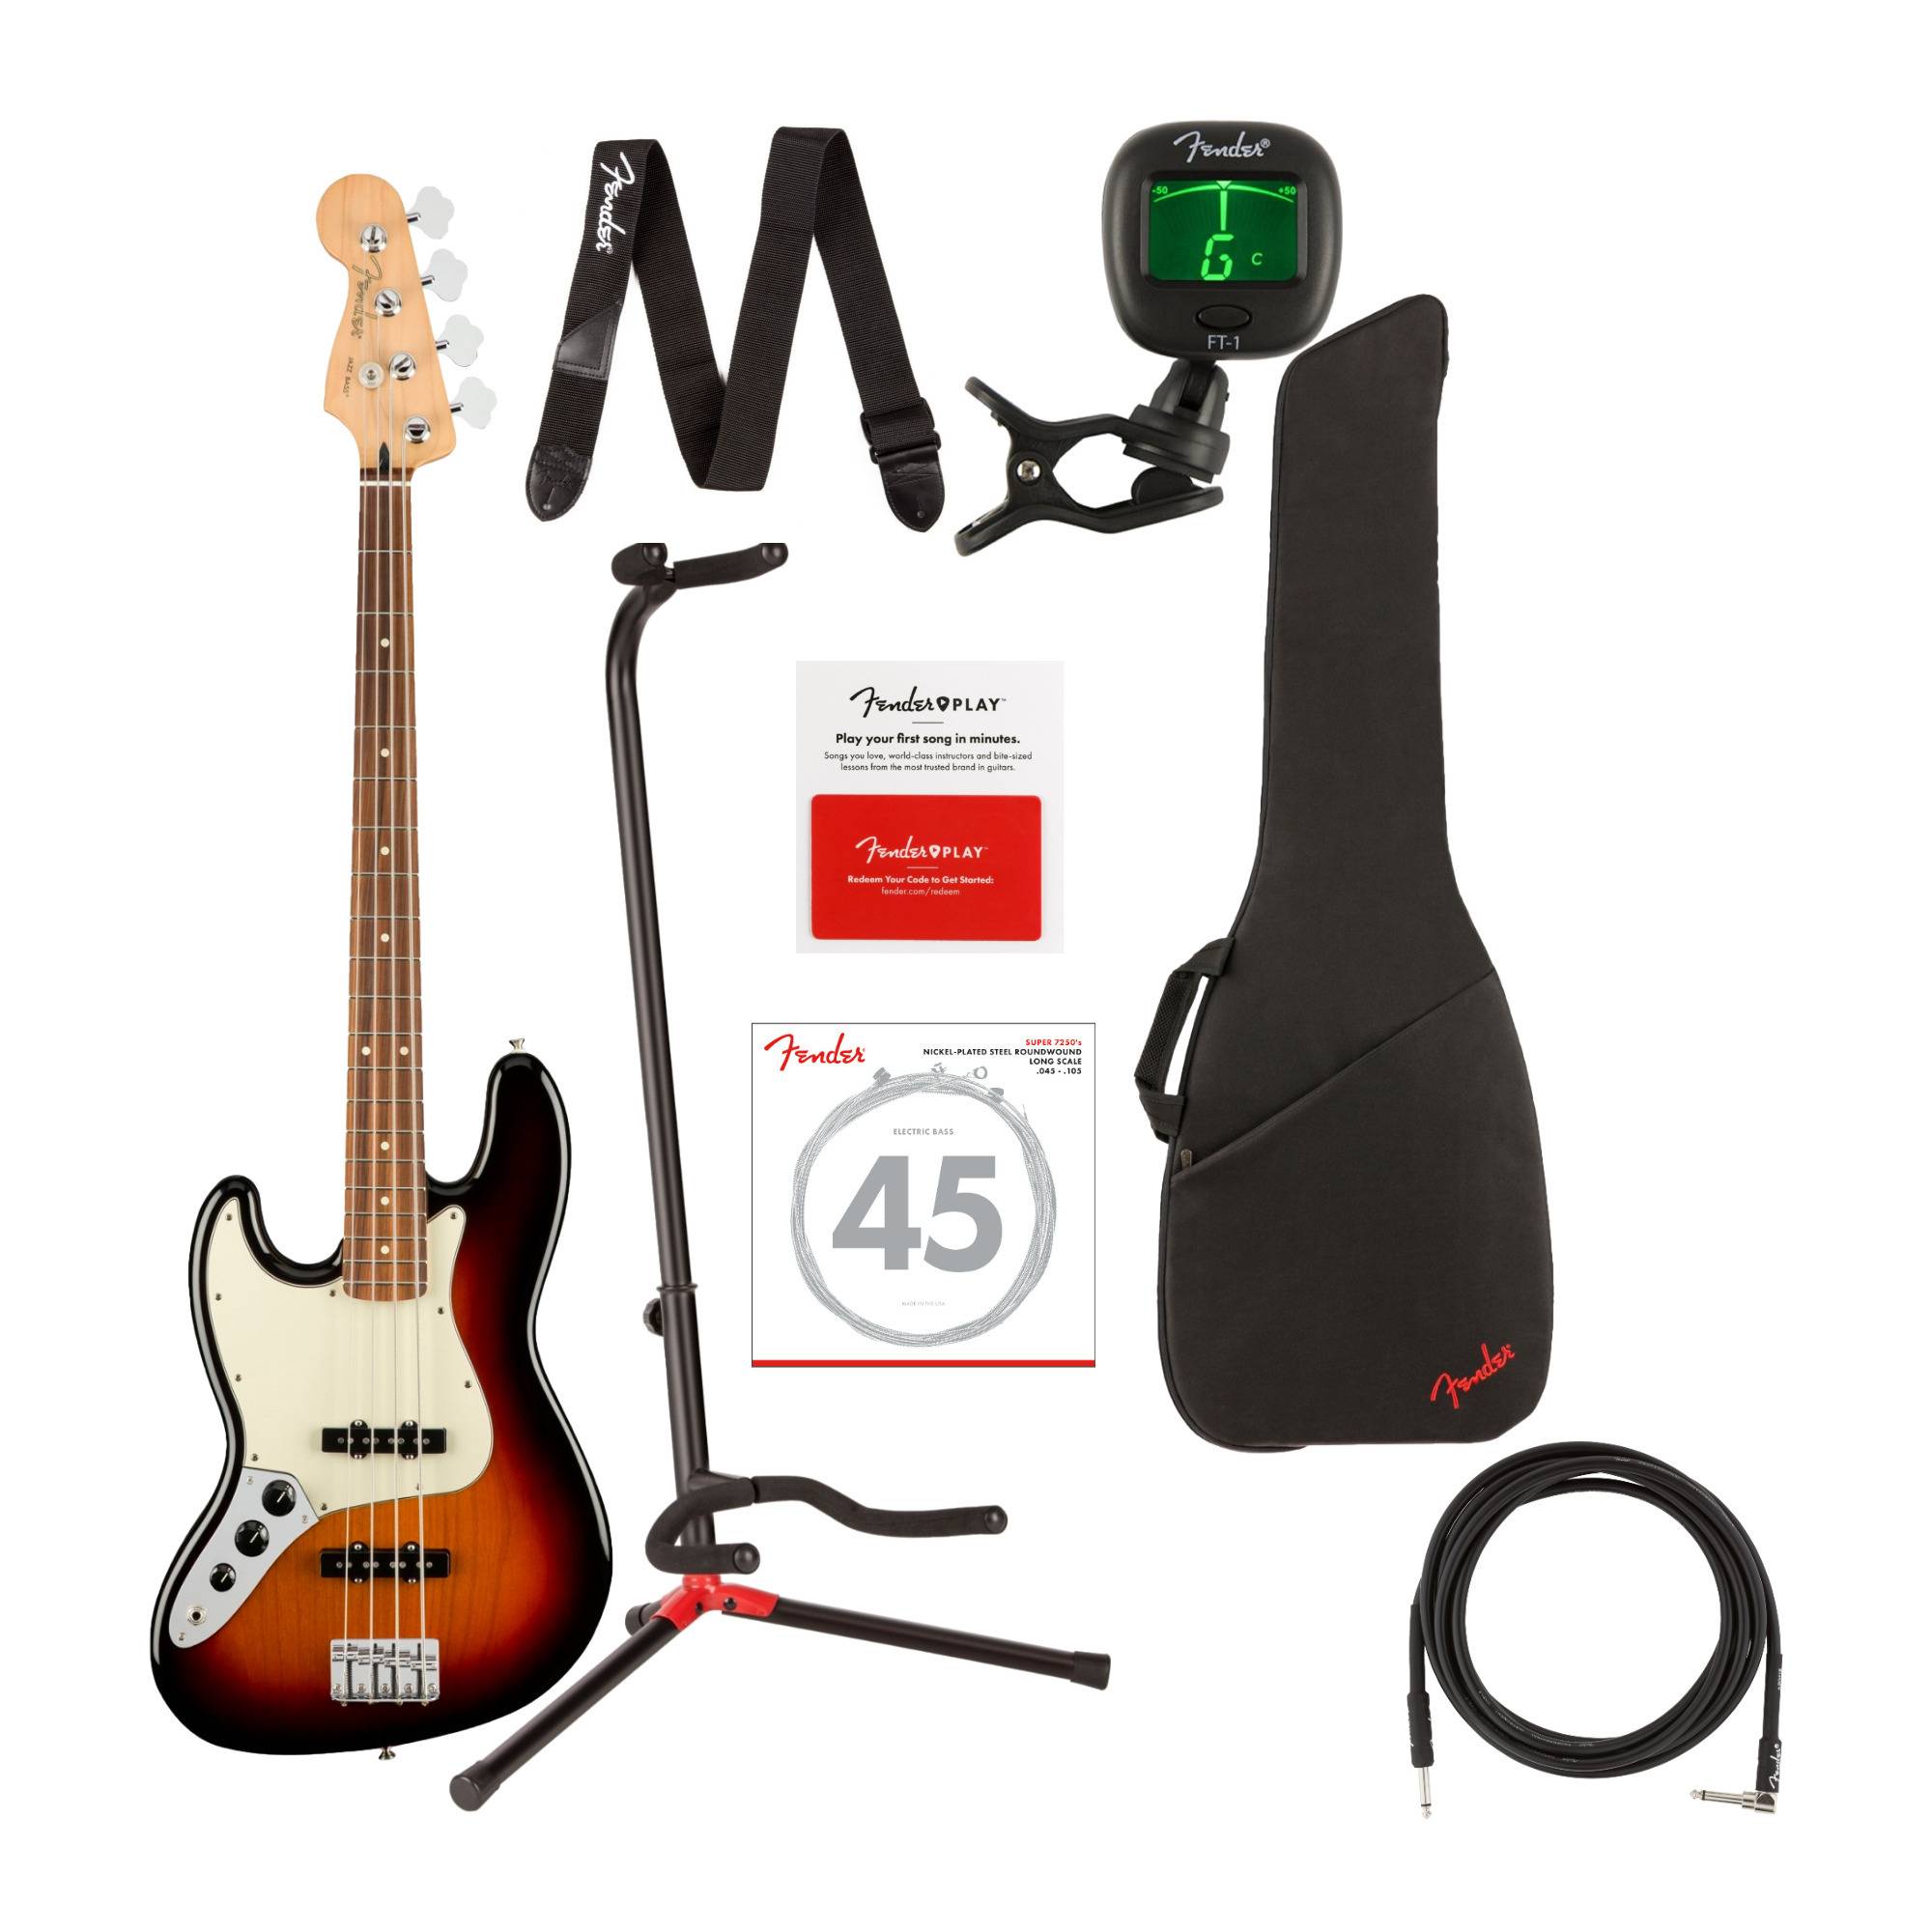 Fender Player Jazz Bass 4-String Guitar (Pau Ferro, Left-Handed, 3-Color Sunburst) with Bag Bundle